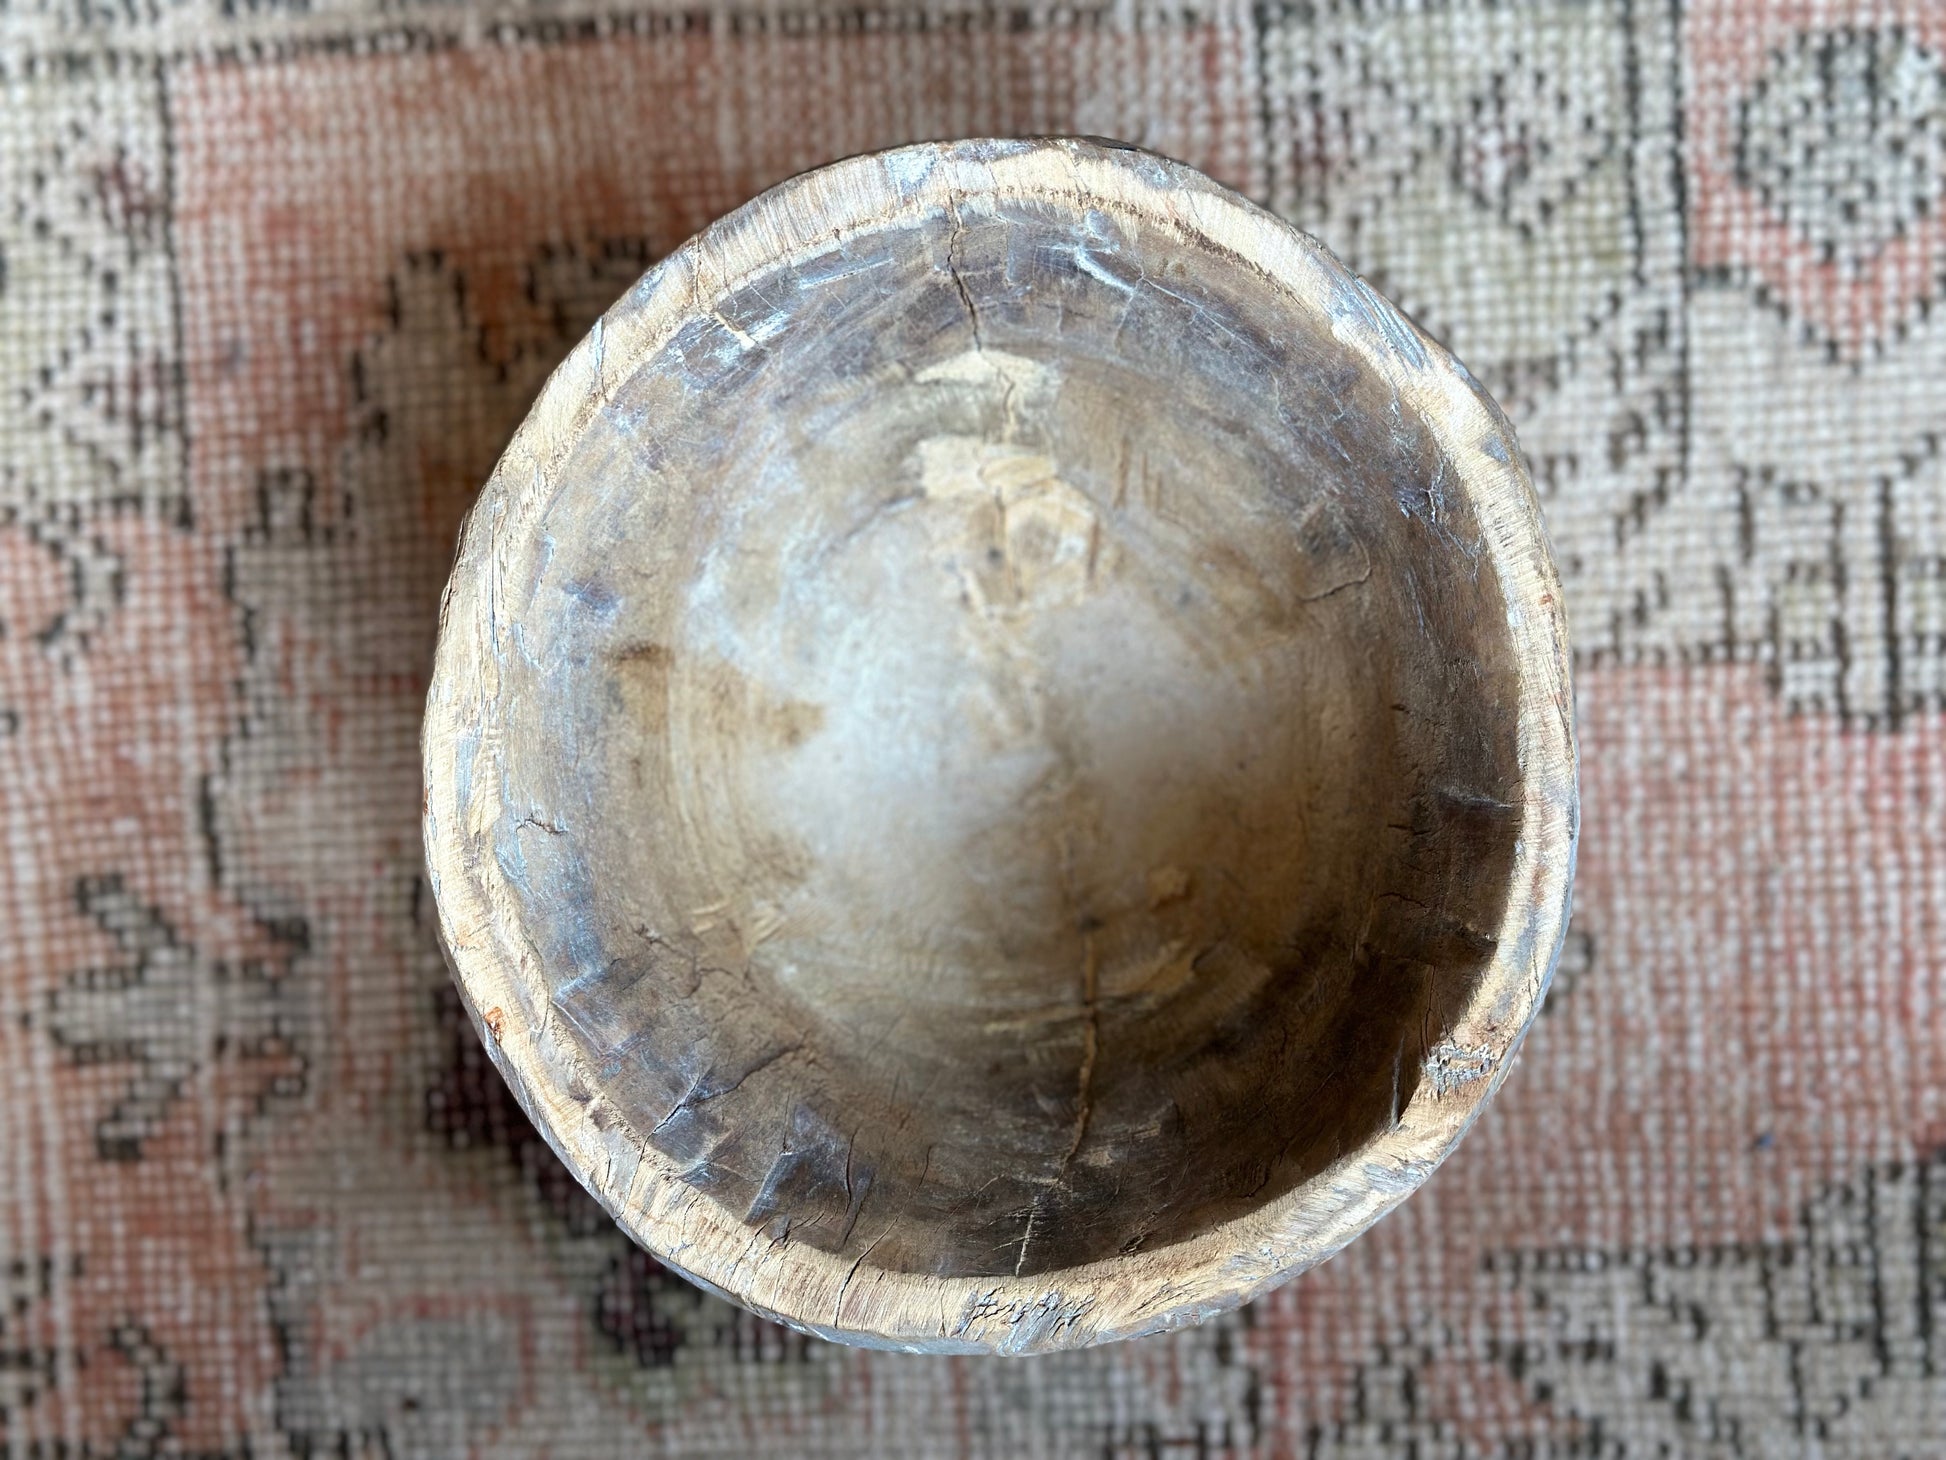 Found Vintage Wooden Bowls